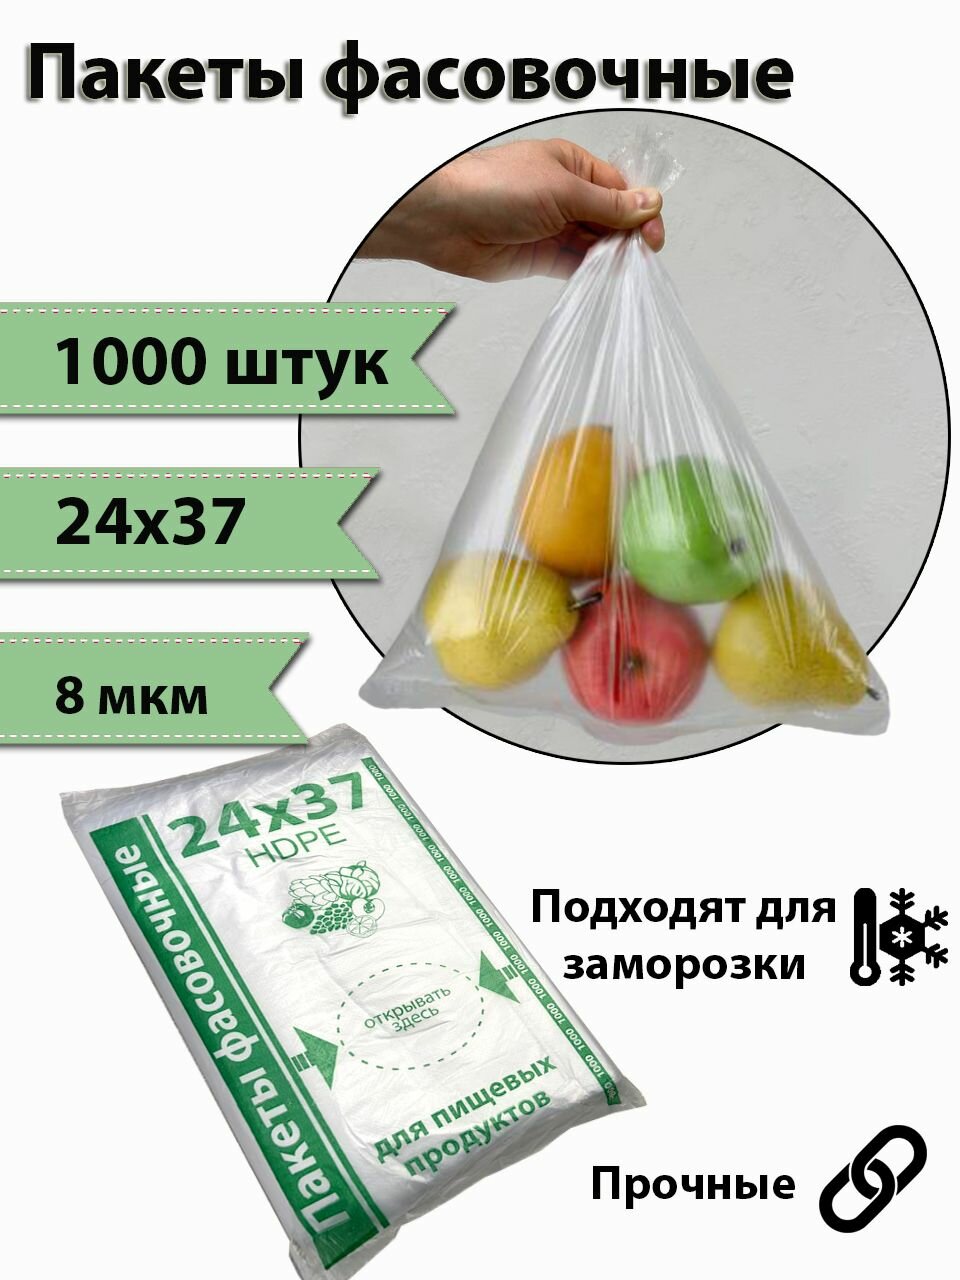 Пакеты фасовочные / пакеты пищевые / пакеты для хранения продуктов / пакеты для заморозки / фасовочные пакеты / полиэтиленовые пакеты / пакеты универсальные / пакеты 1000шт. / плотность 8 мкм / 24х37.